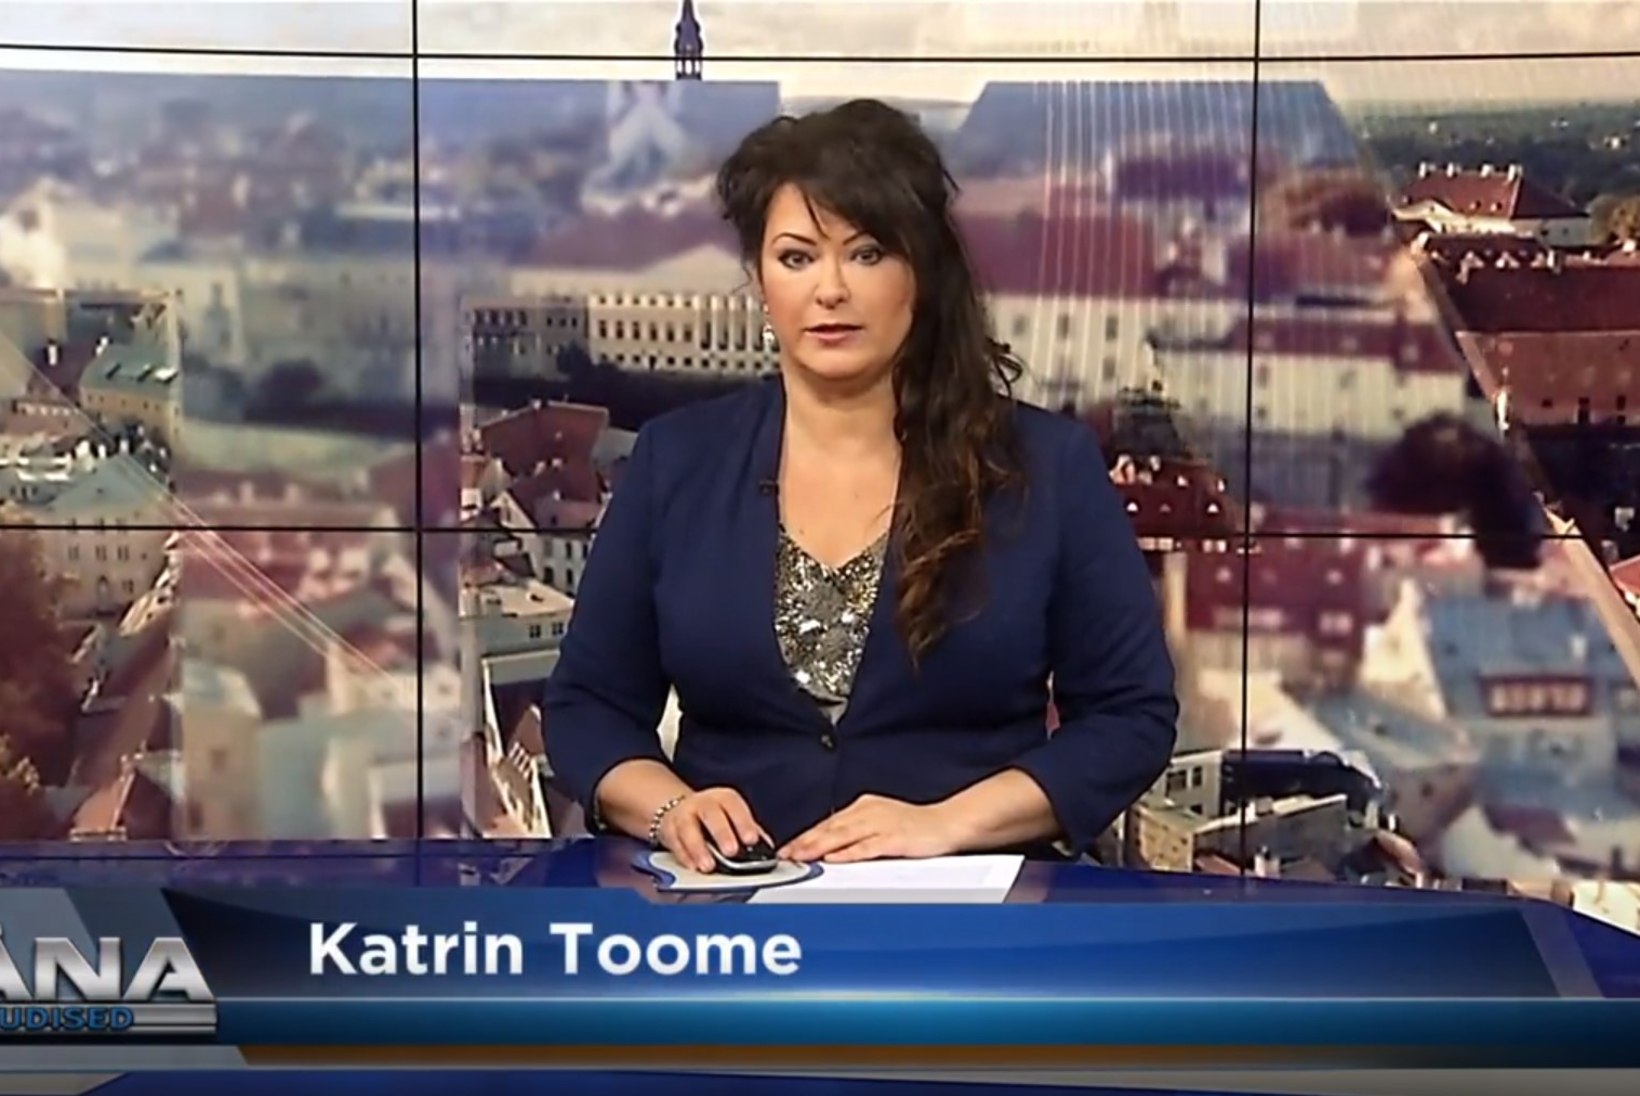 Tallinna TV-st koondatud Katrin Toome: juba kuu aega tagasi oli koosolek, kus öeldi, et asjad on halvasti